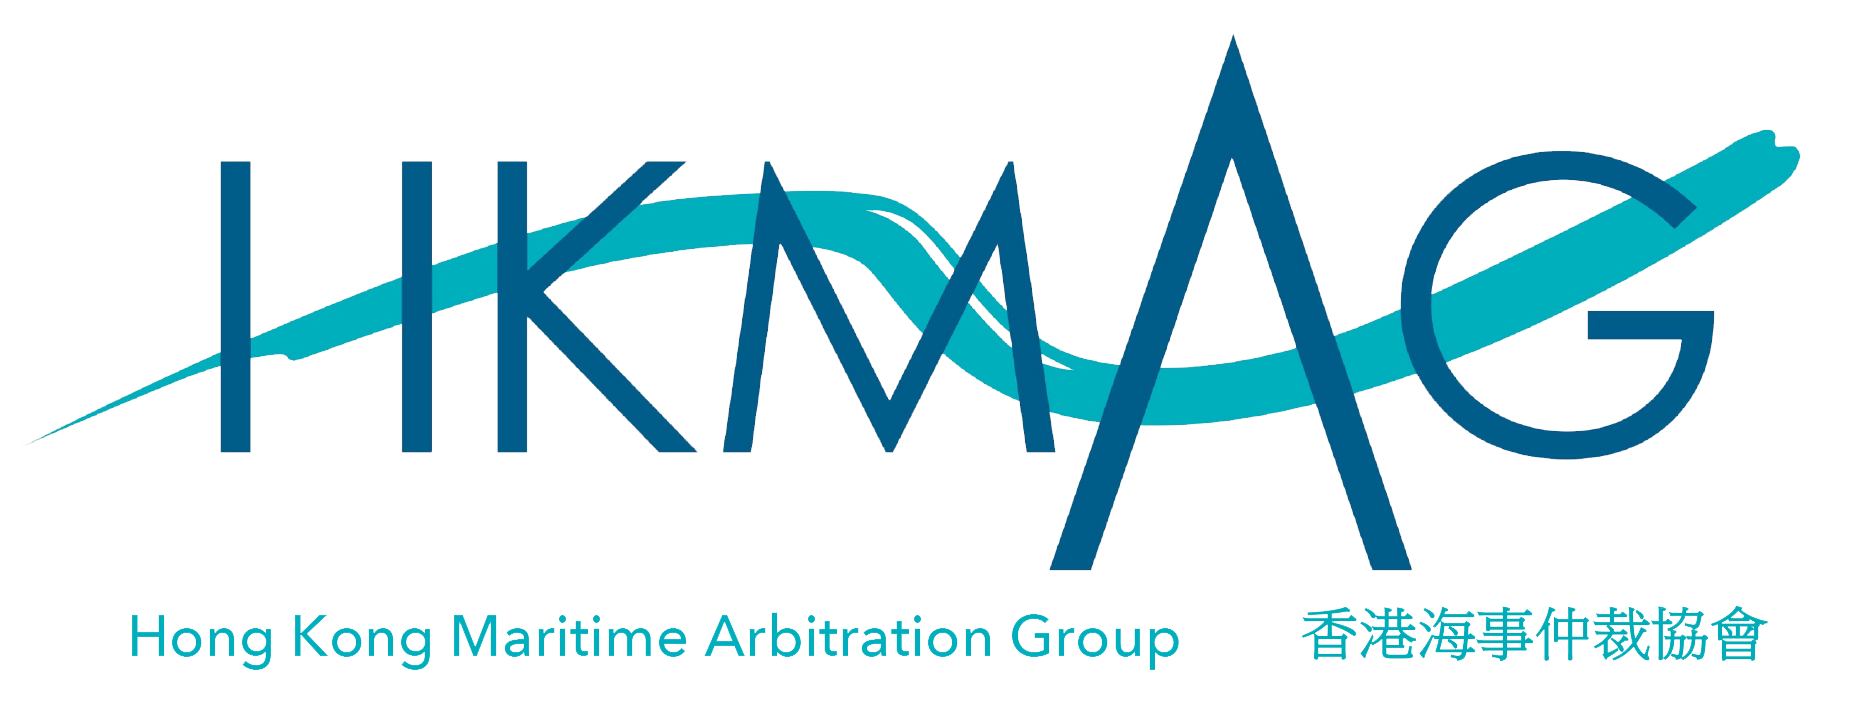 Hong Kong Maritime Arbitration Group